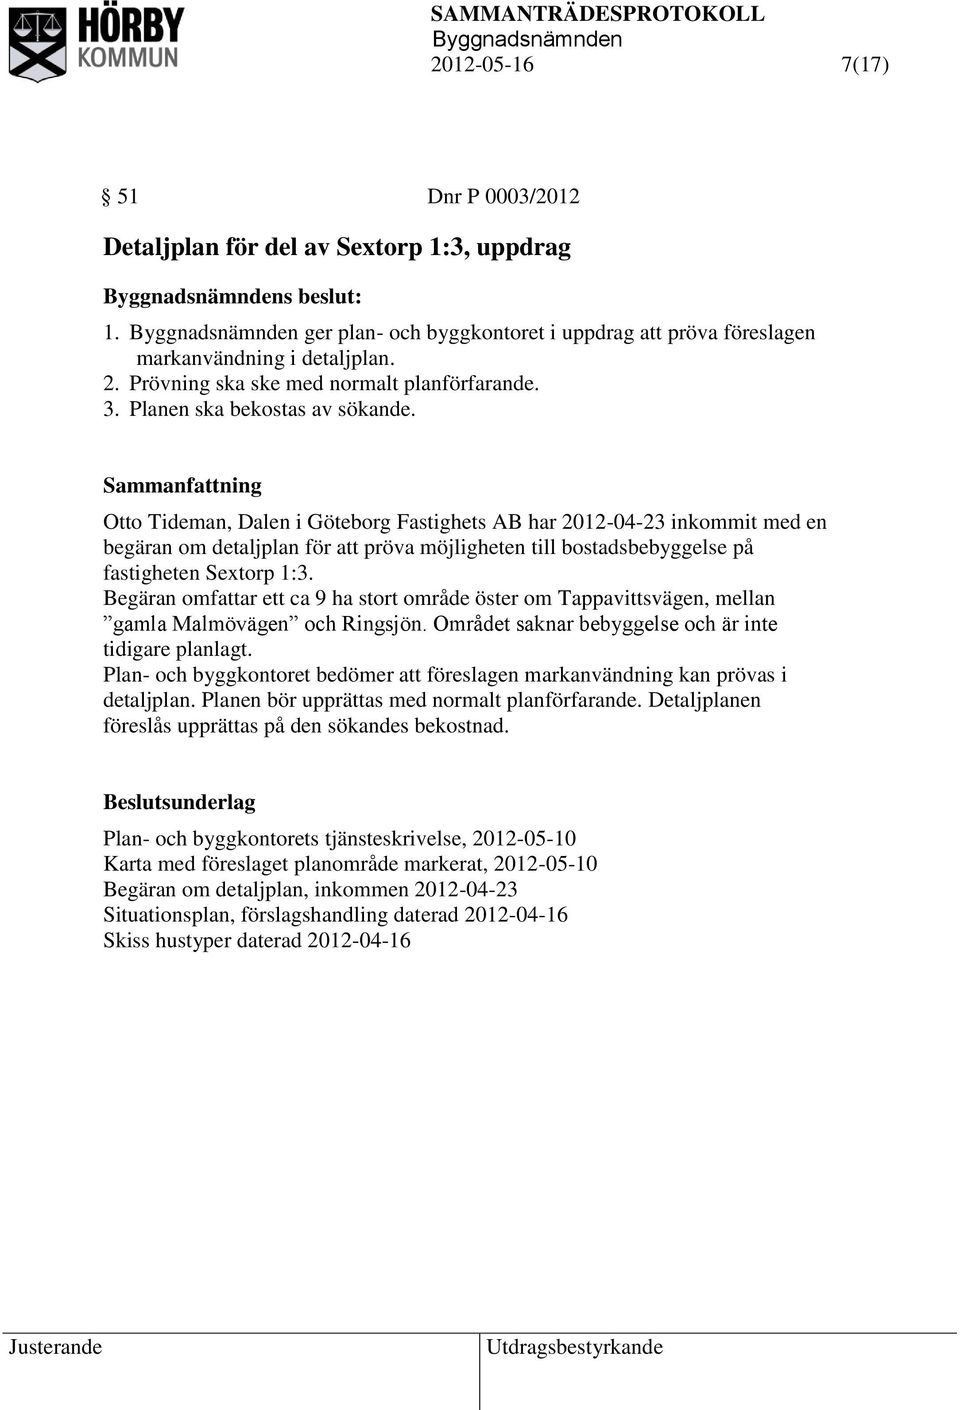 Otto Tideman, Dalen i Göteborg Fastighets AB har 2012-04-23 inkommit med en begäran om detaljplan för att pröva möjligheten till bostadsbebyggelse på fastigheten Sextorp 1:3.